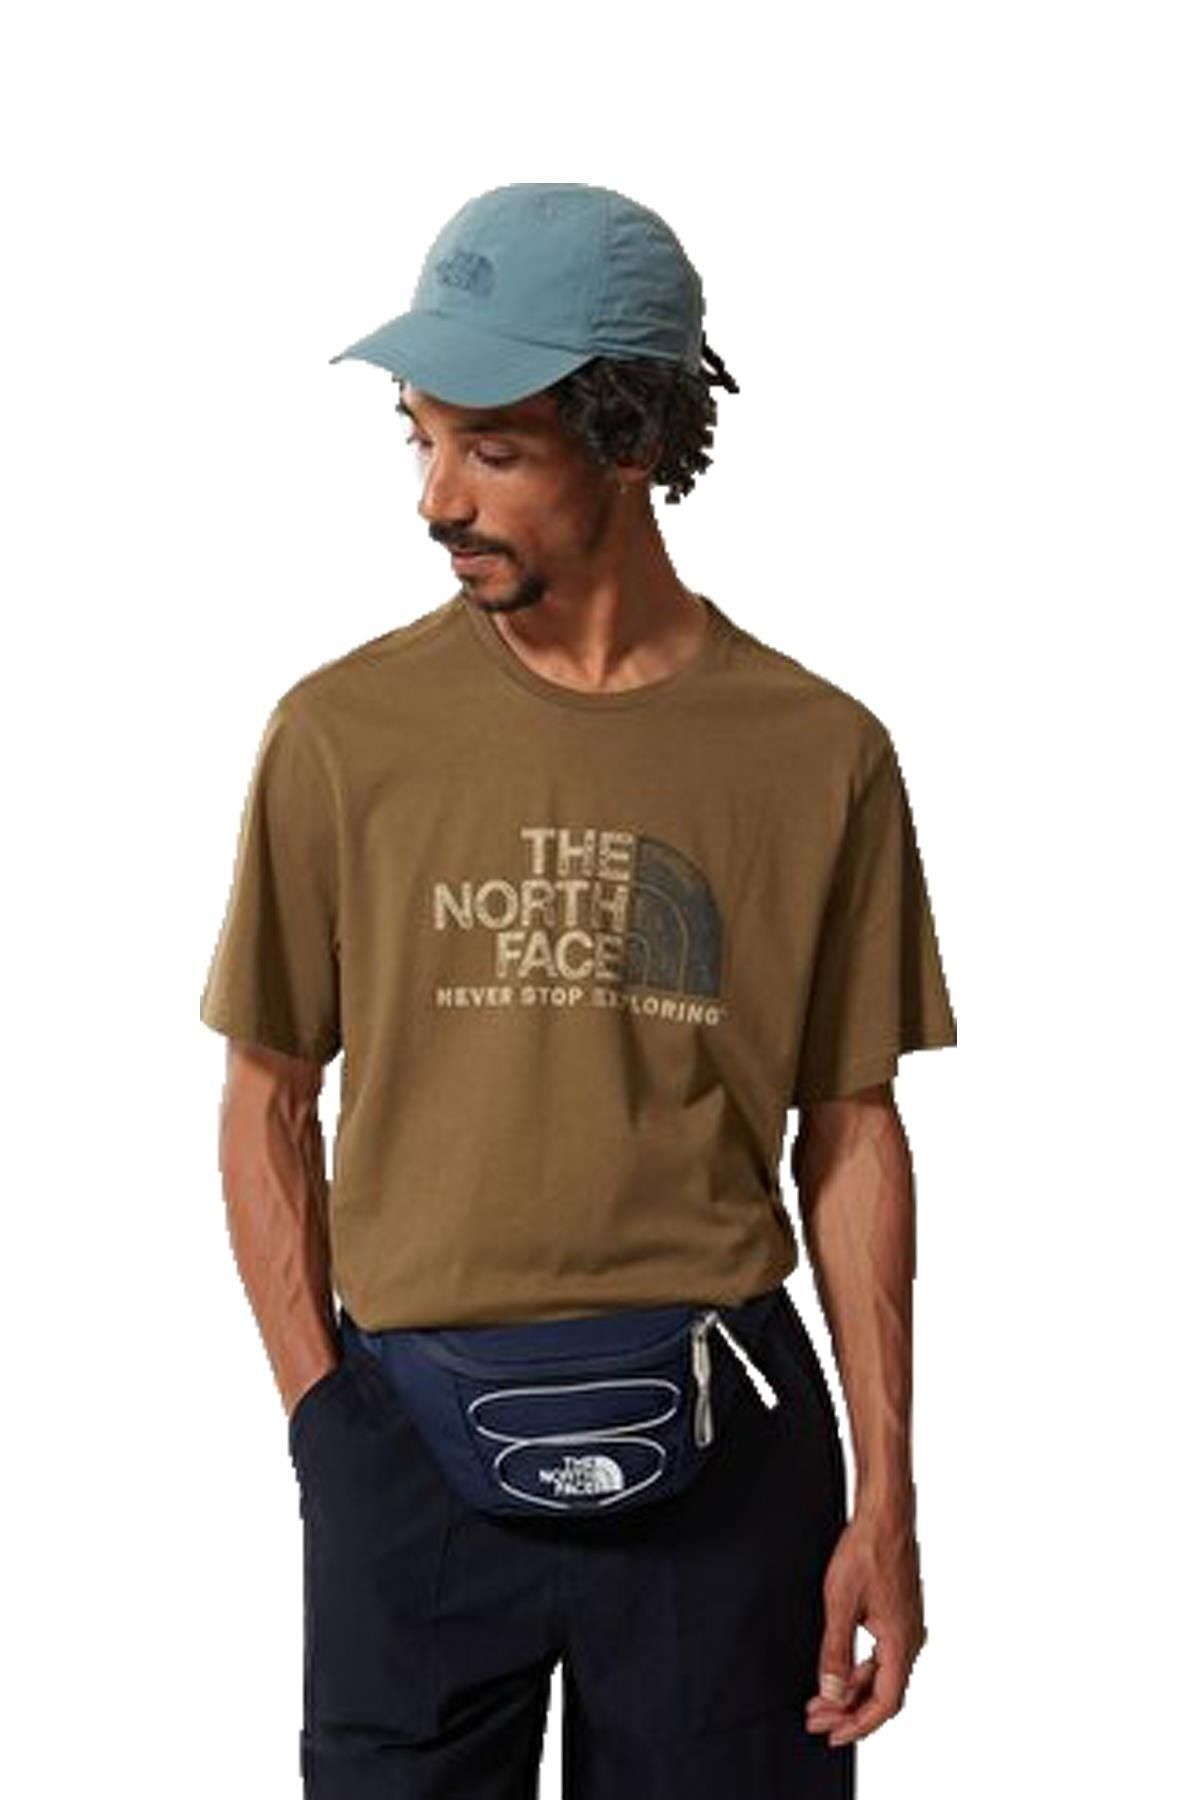 The North Face M S/s Rust 2 Tee T-shirt Nf0a4m6837u1